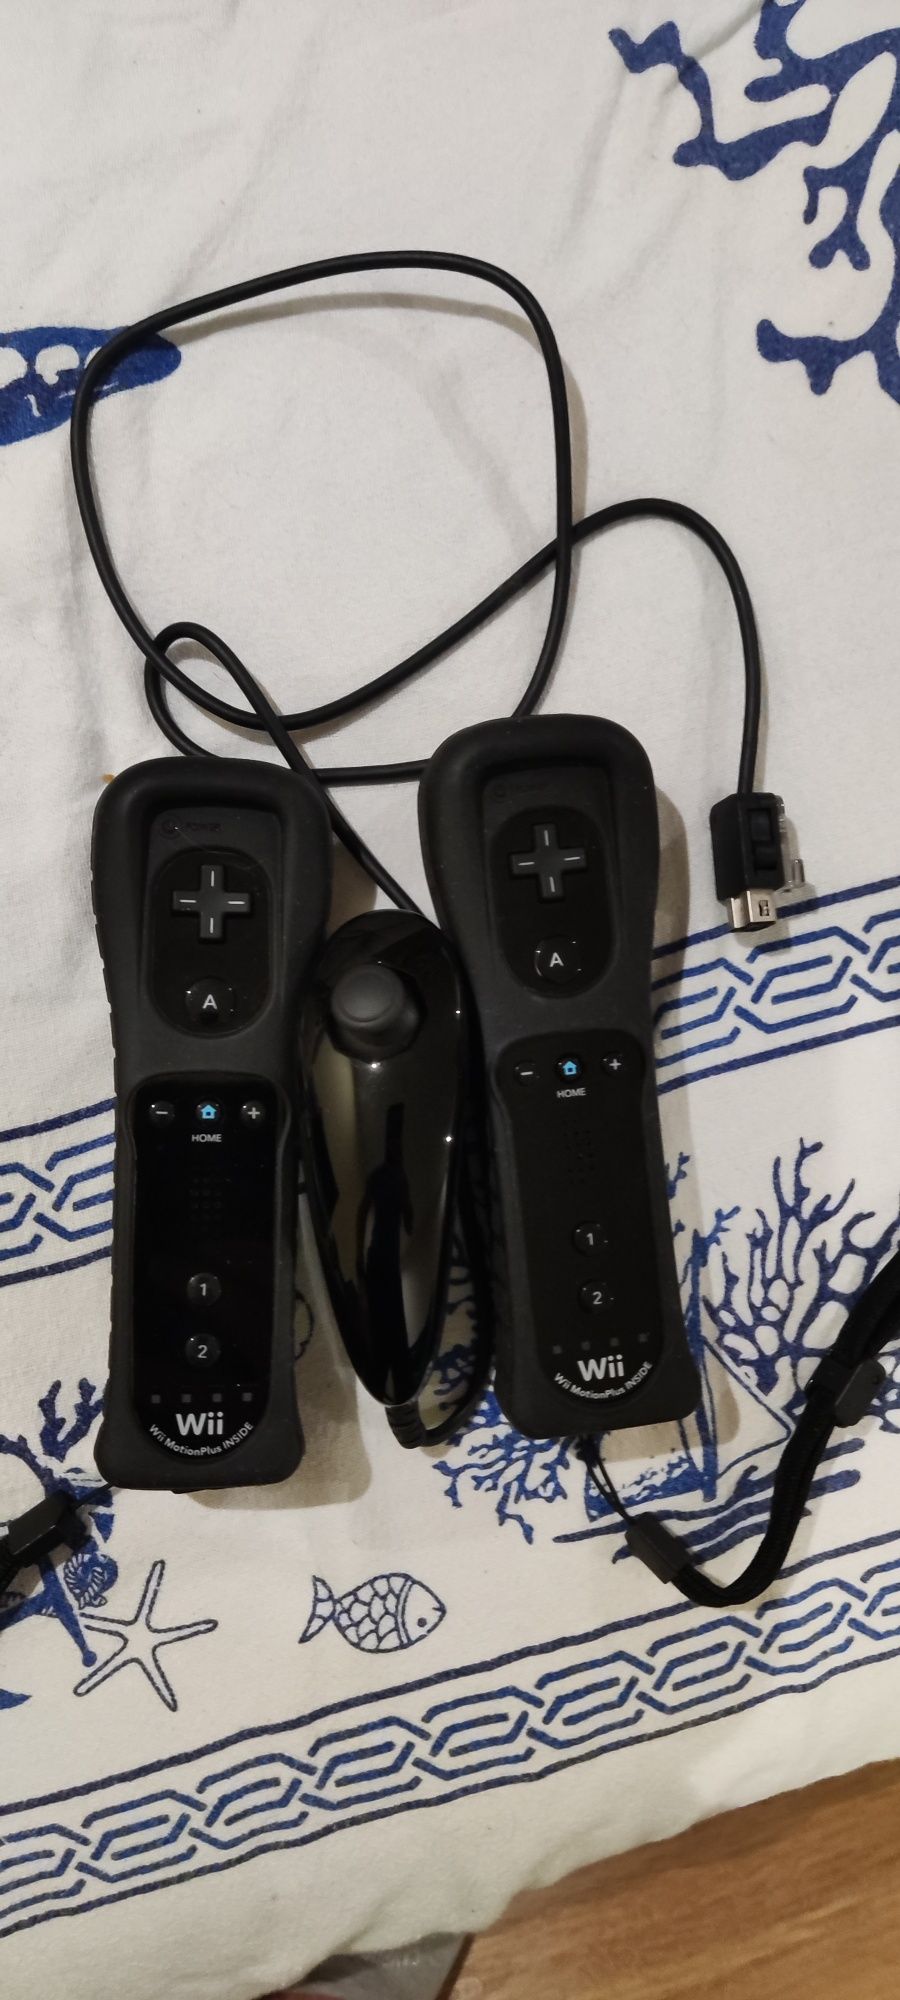 Venda Wii Desbloqueada